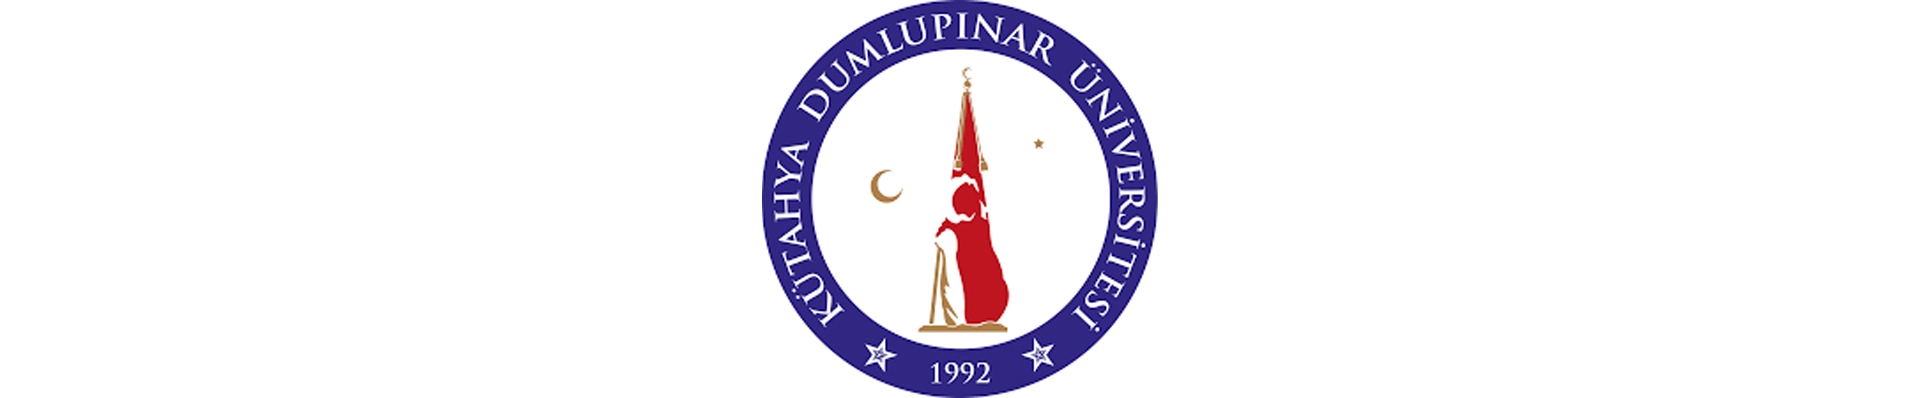 آزمون یوس دانشگاه دوملوپینار 2023 (Dumlupinar University)